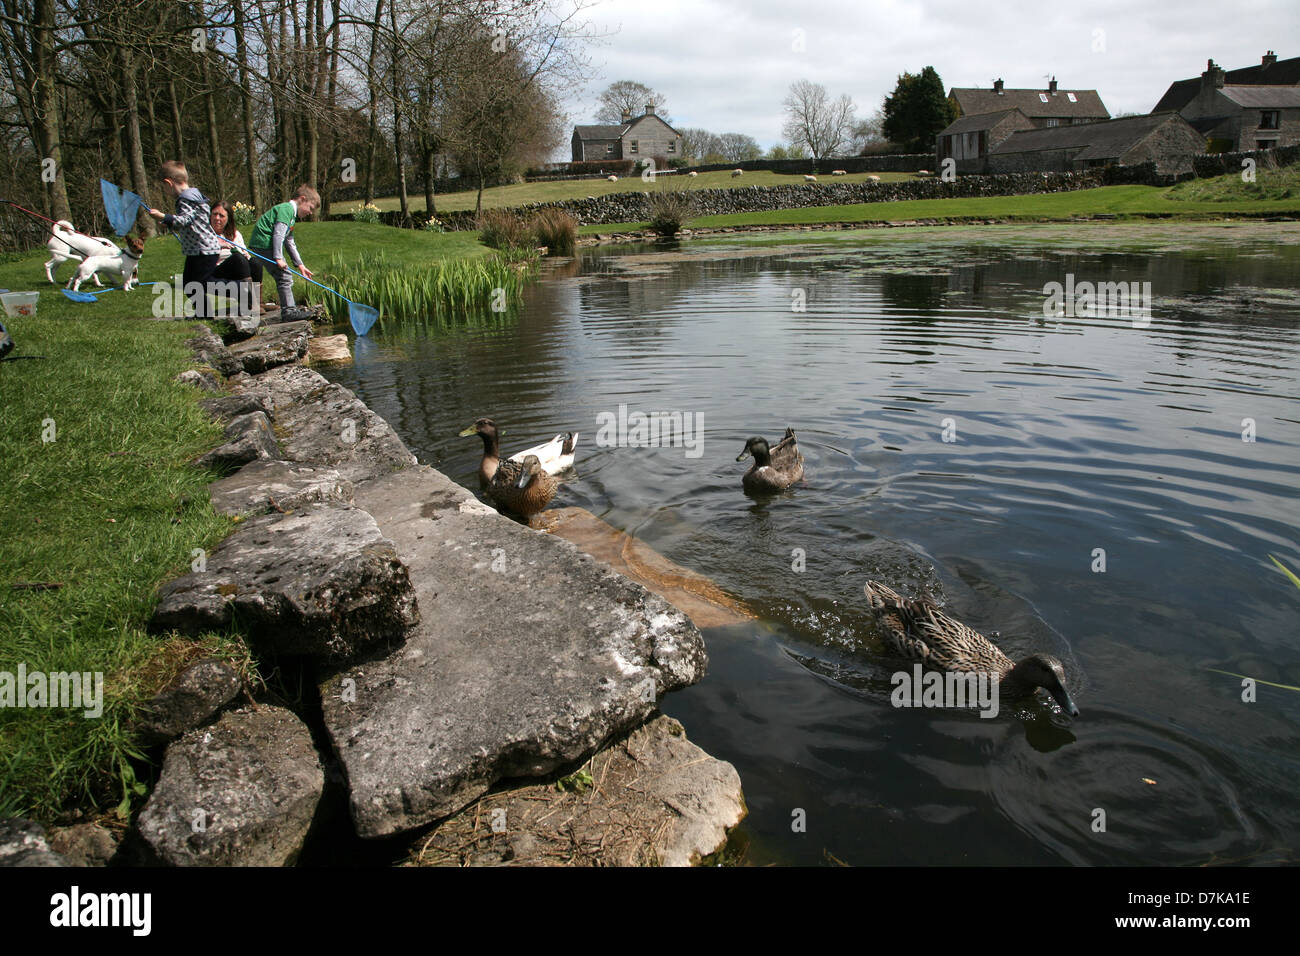 Village pond, Monyash, Derbyshire Stock Photo